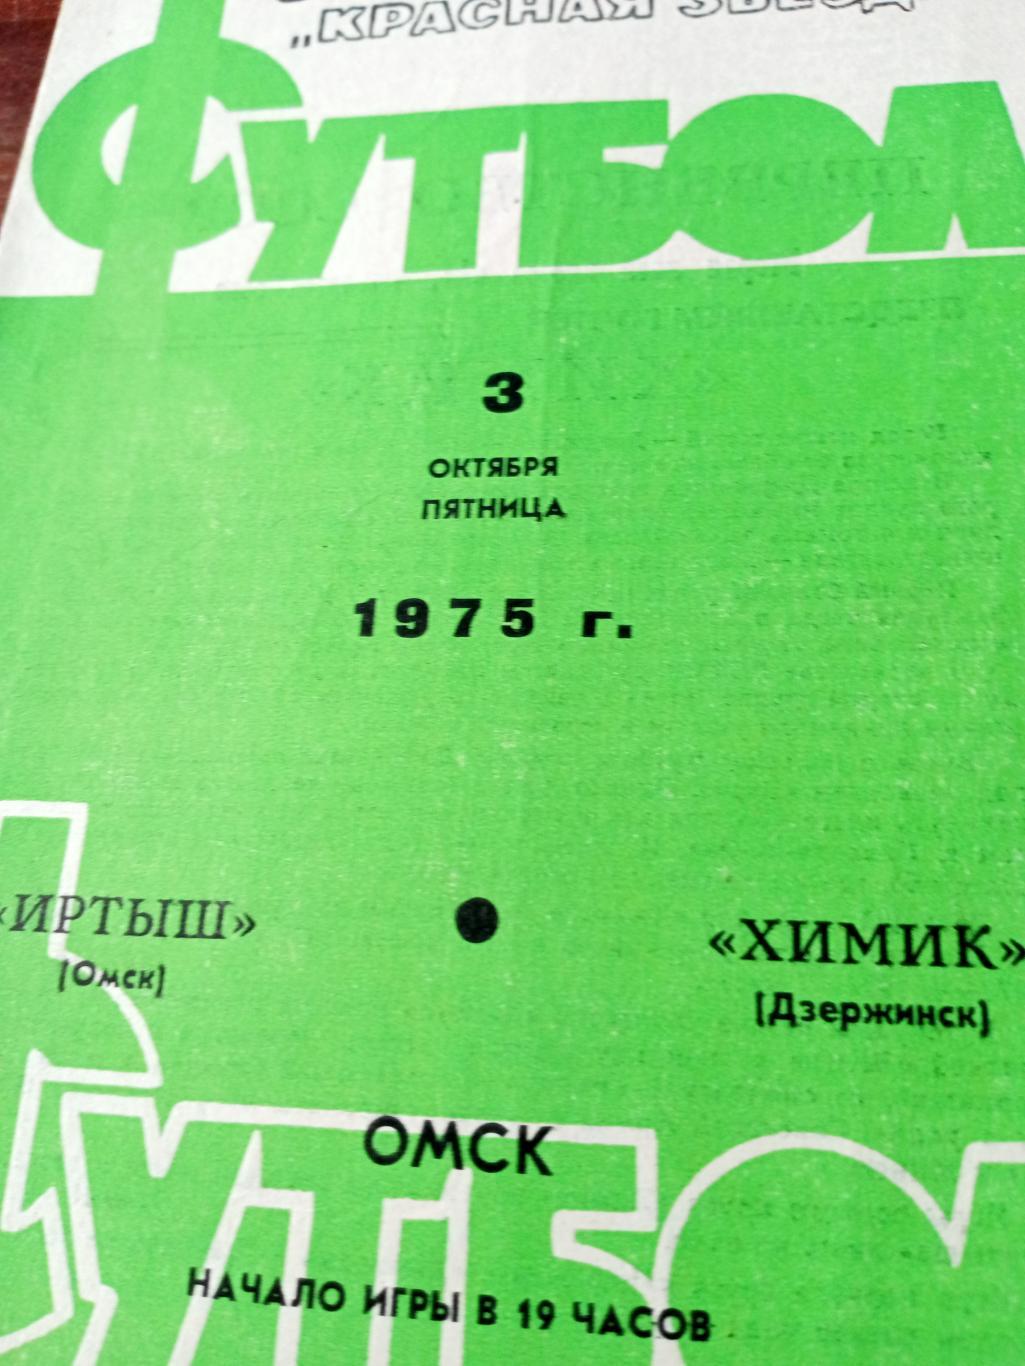 Иртыш Омск - Химик Дзержинск. 3 октября 1975 год